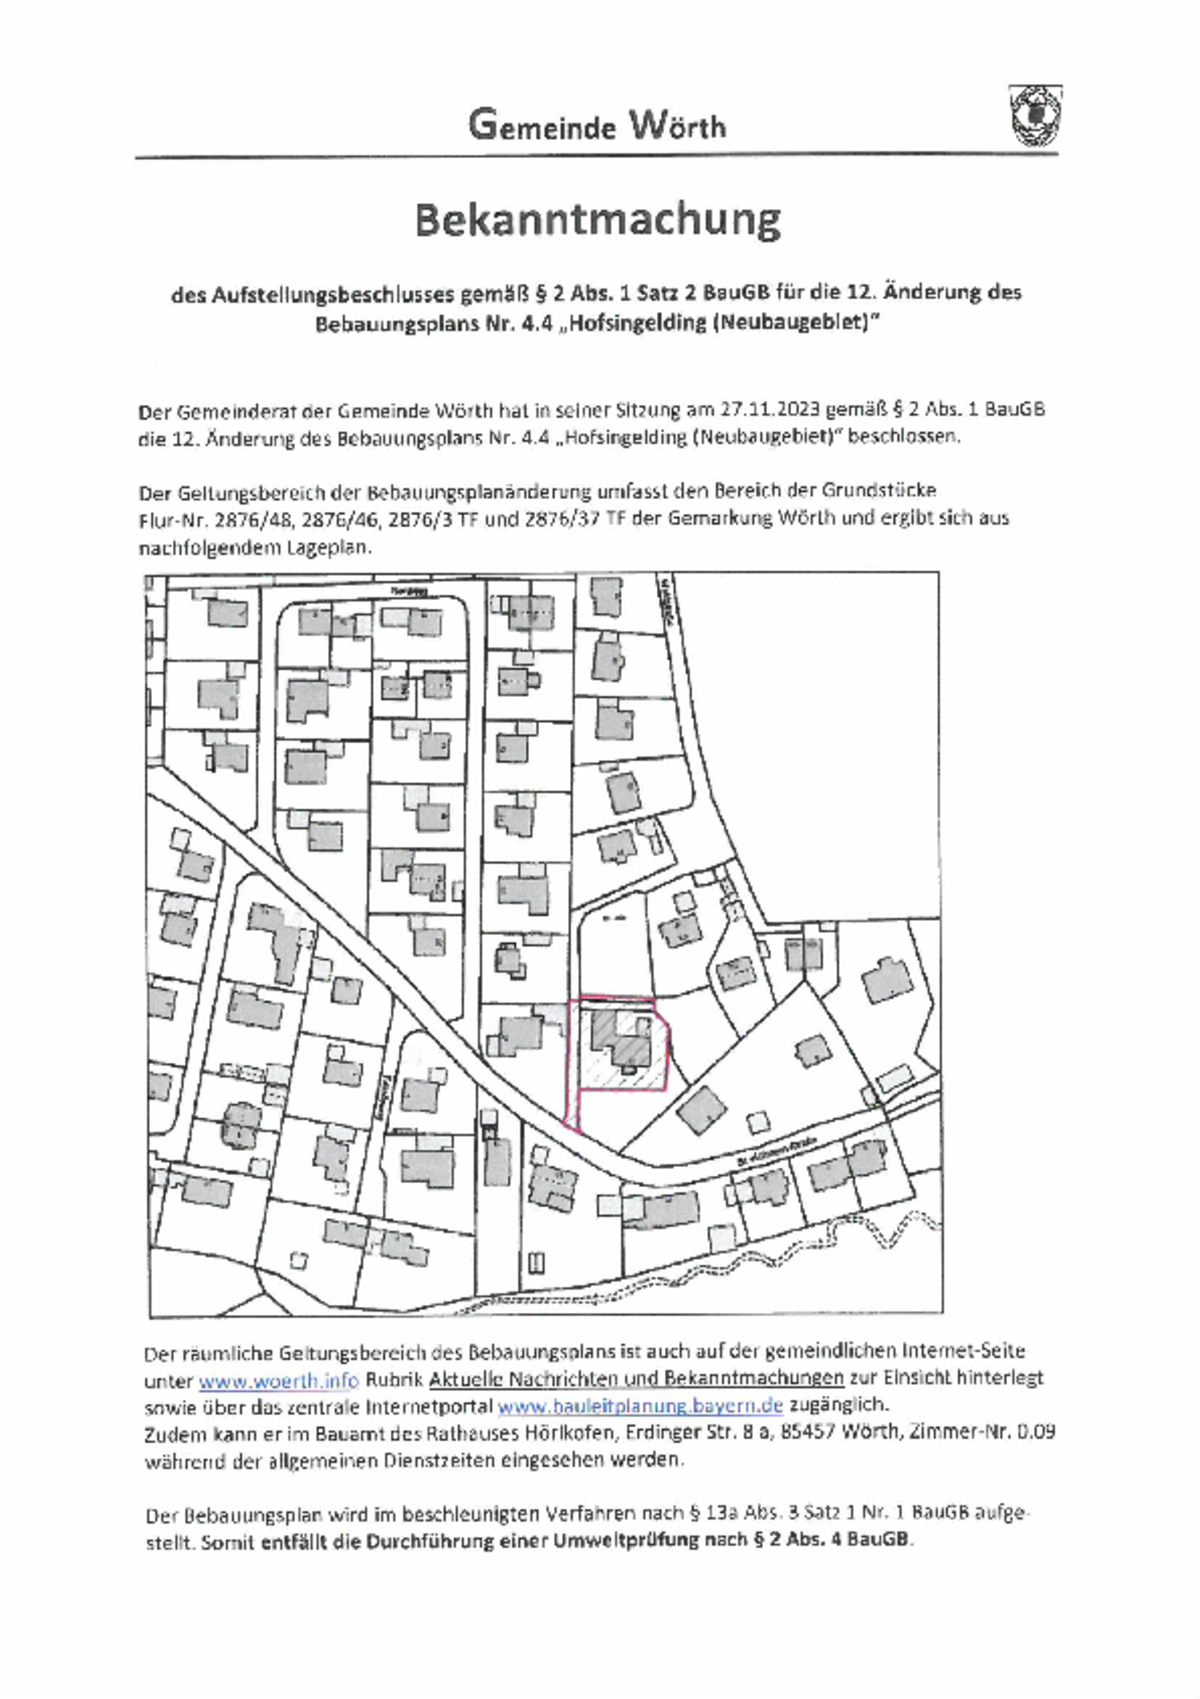 Bekanntmachung des Aufstellungsbeschlusses für die 12. Änderung des Bebauungsplans Nr. 4.4 Hofsingelding (Neubaugebiet) 